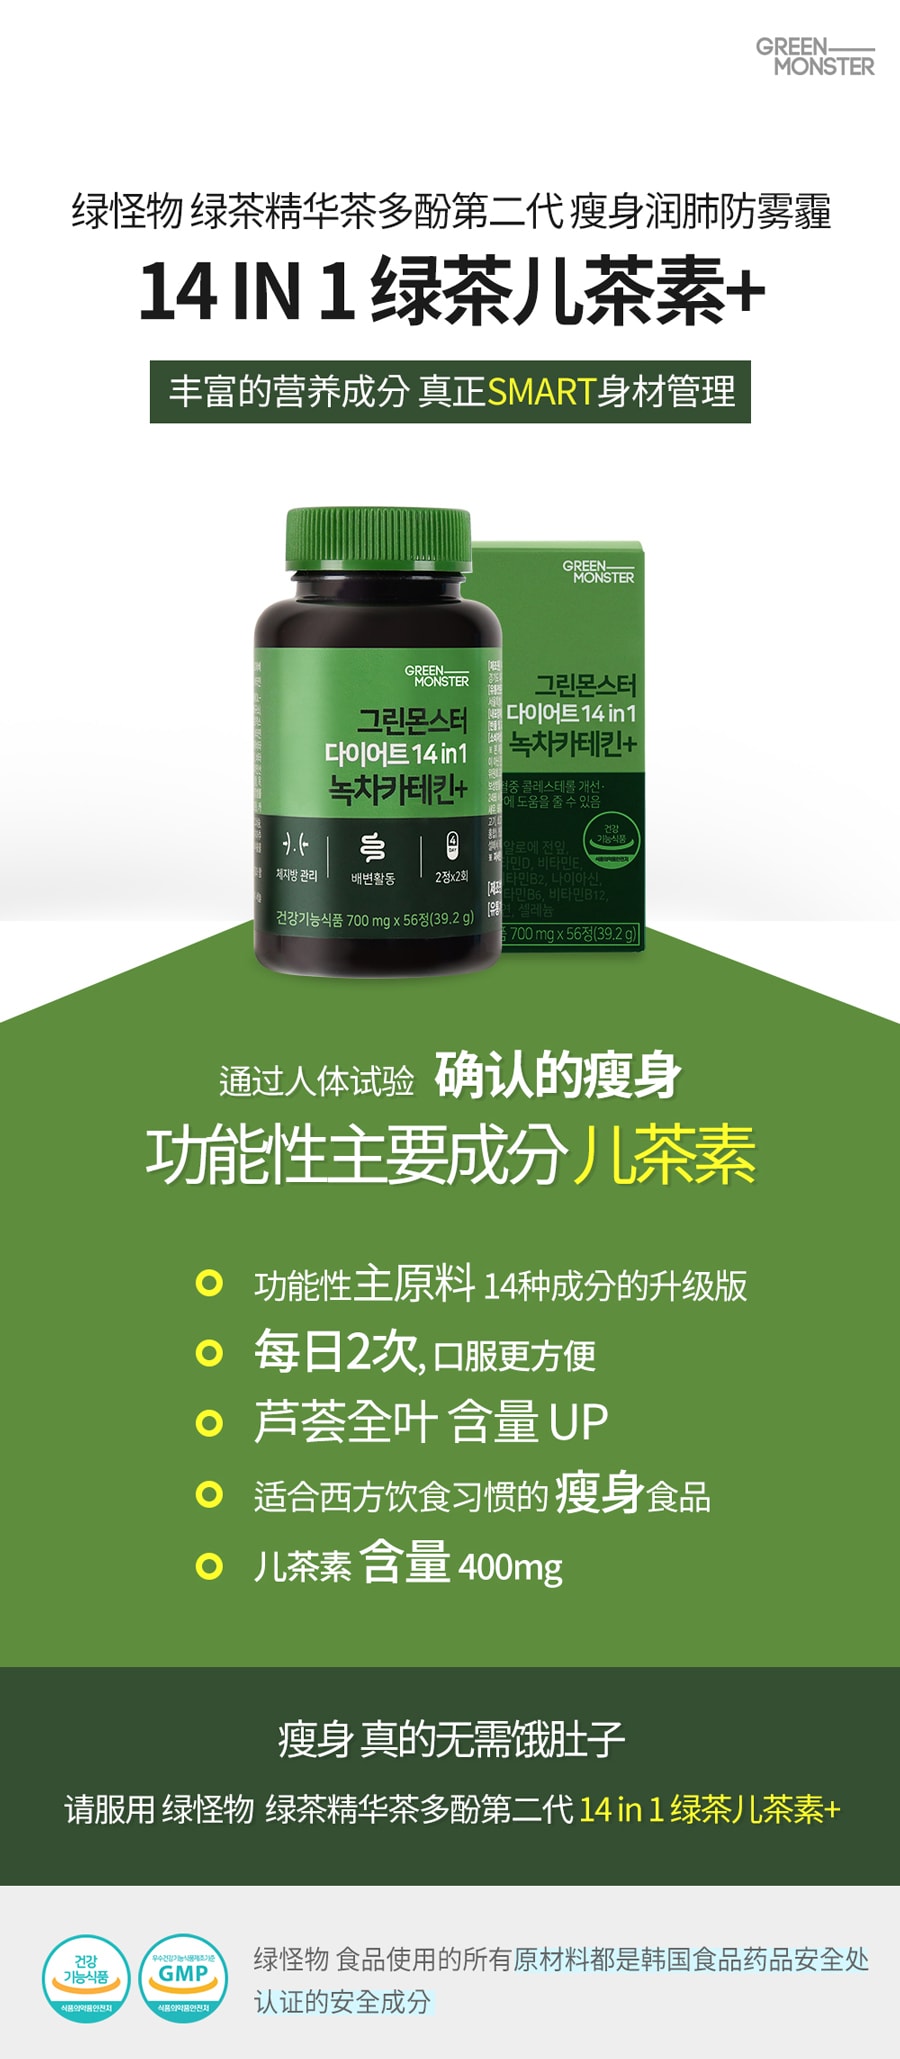 韩国 [Green Monster] 绿色瘦身14in1 绿茶儿茶素 减肥瘦身通便辅助剂 56粒